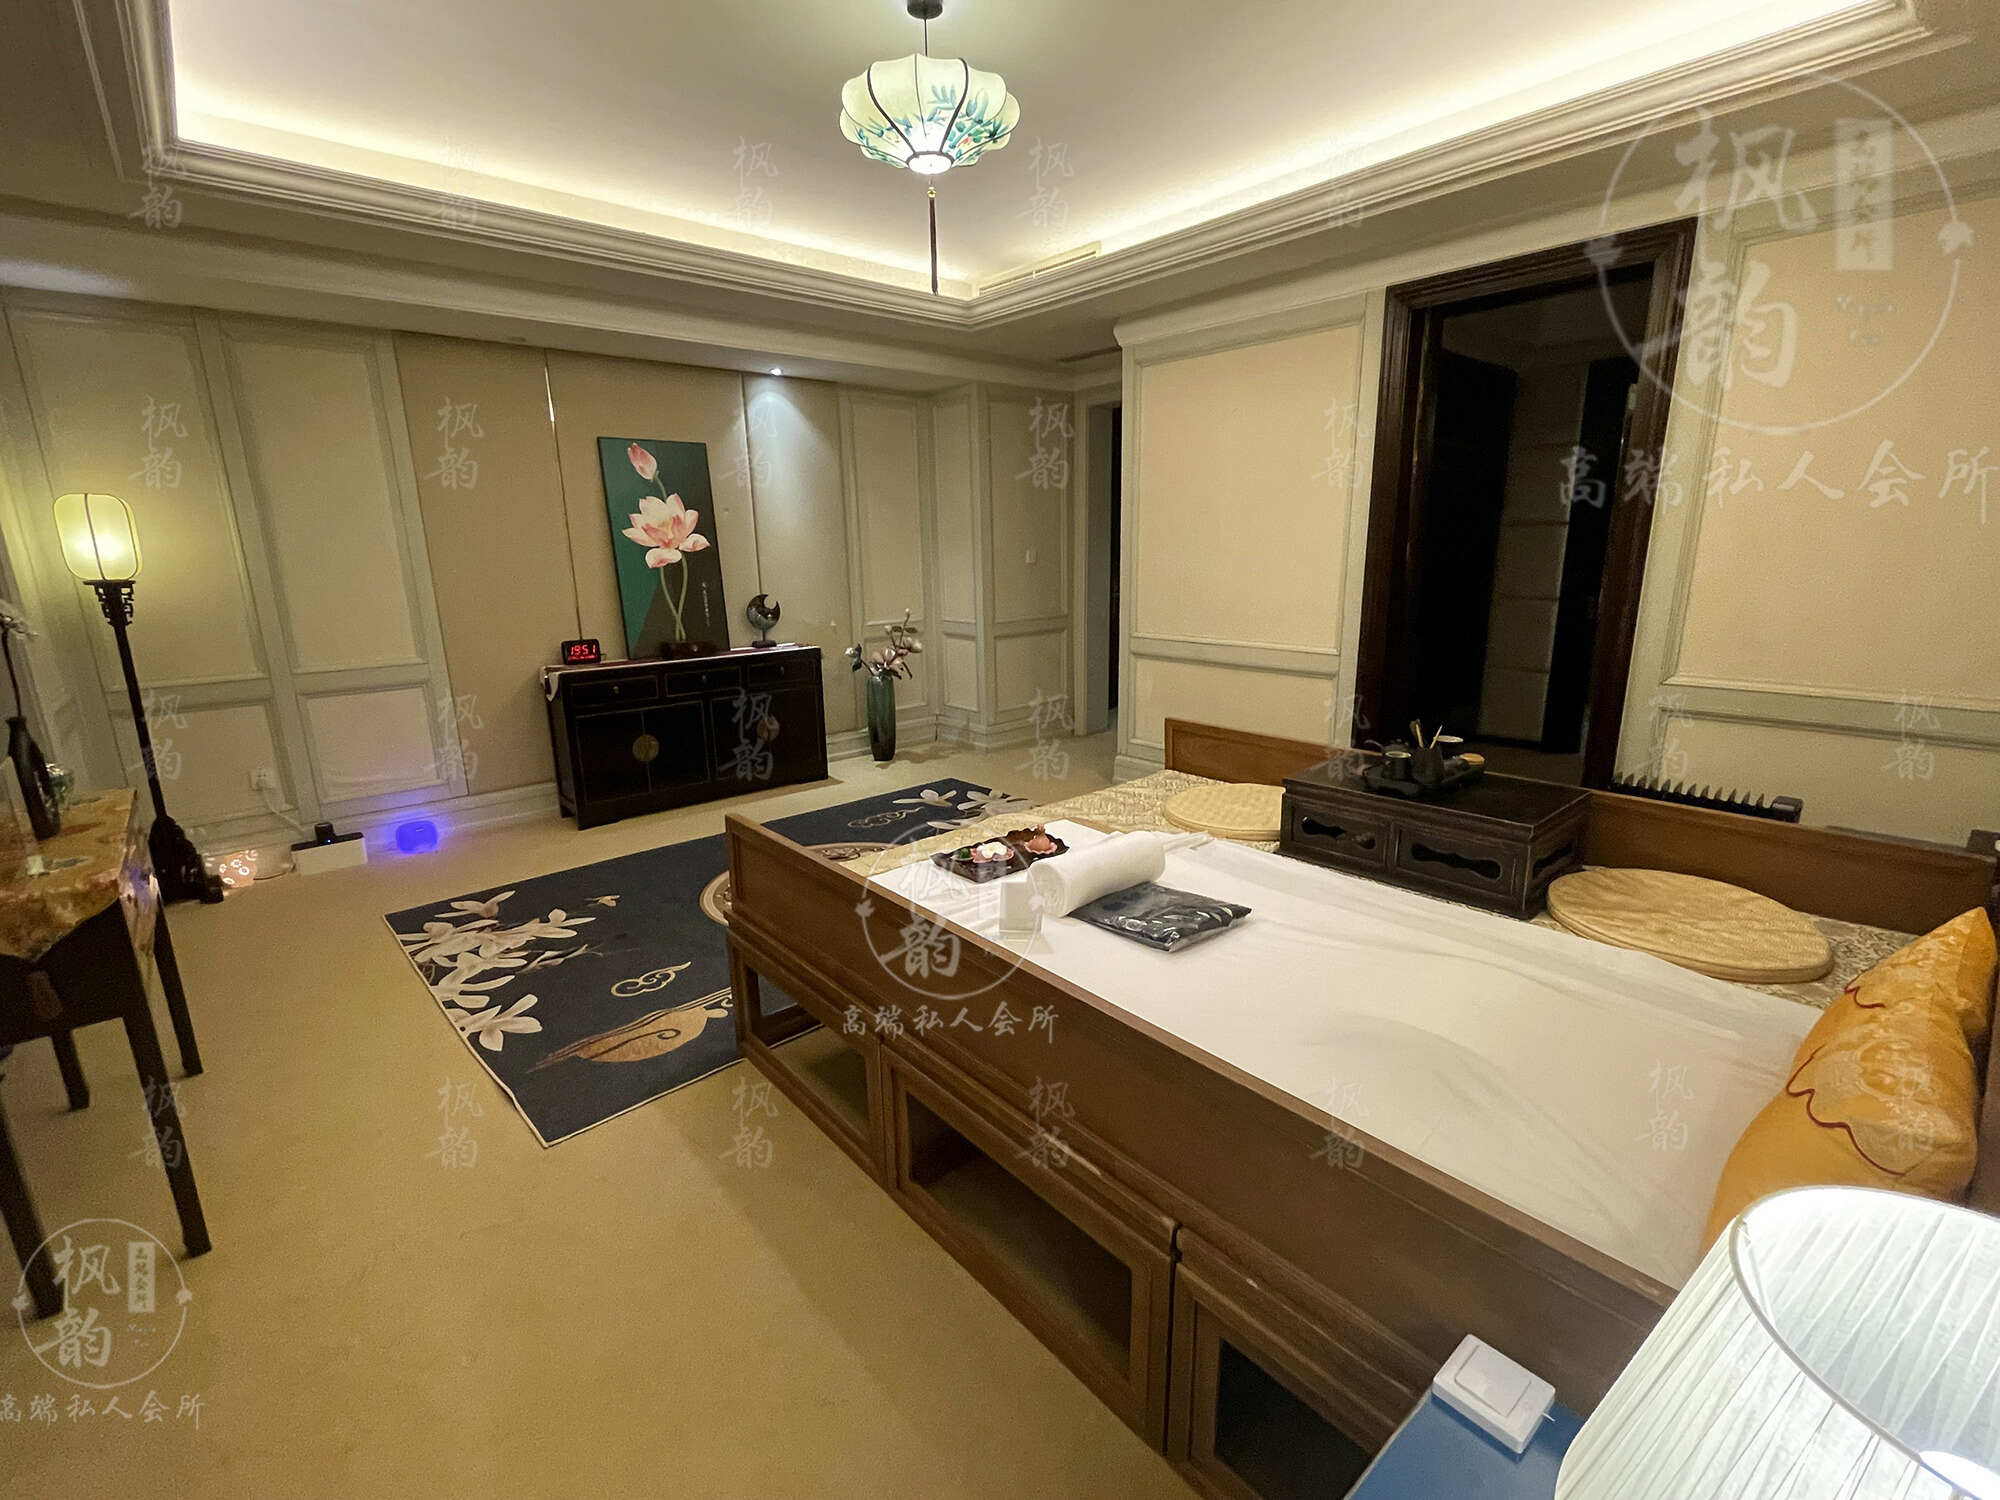 南通天津渔阳鼓楼人气优选沐足会馆房间也很干净，舒适的spa体验